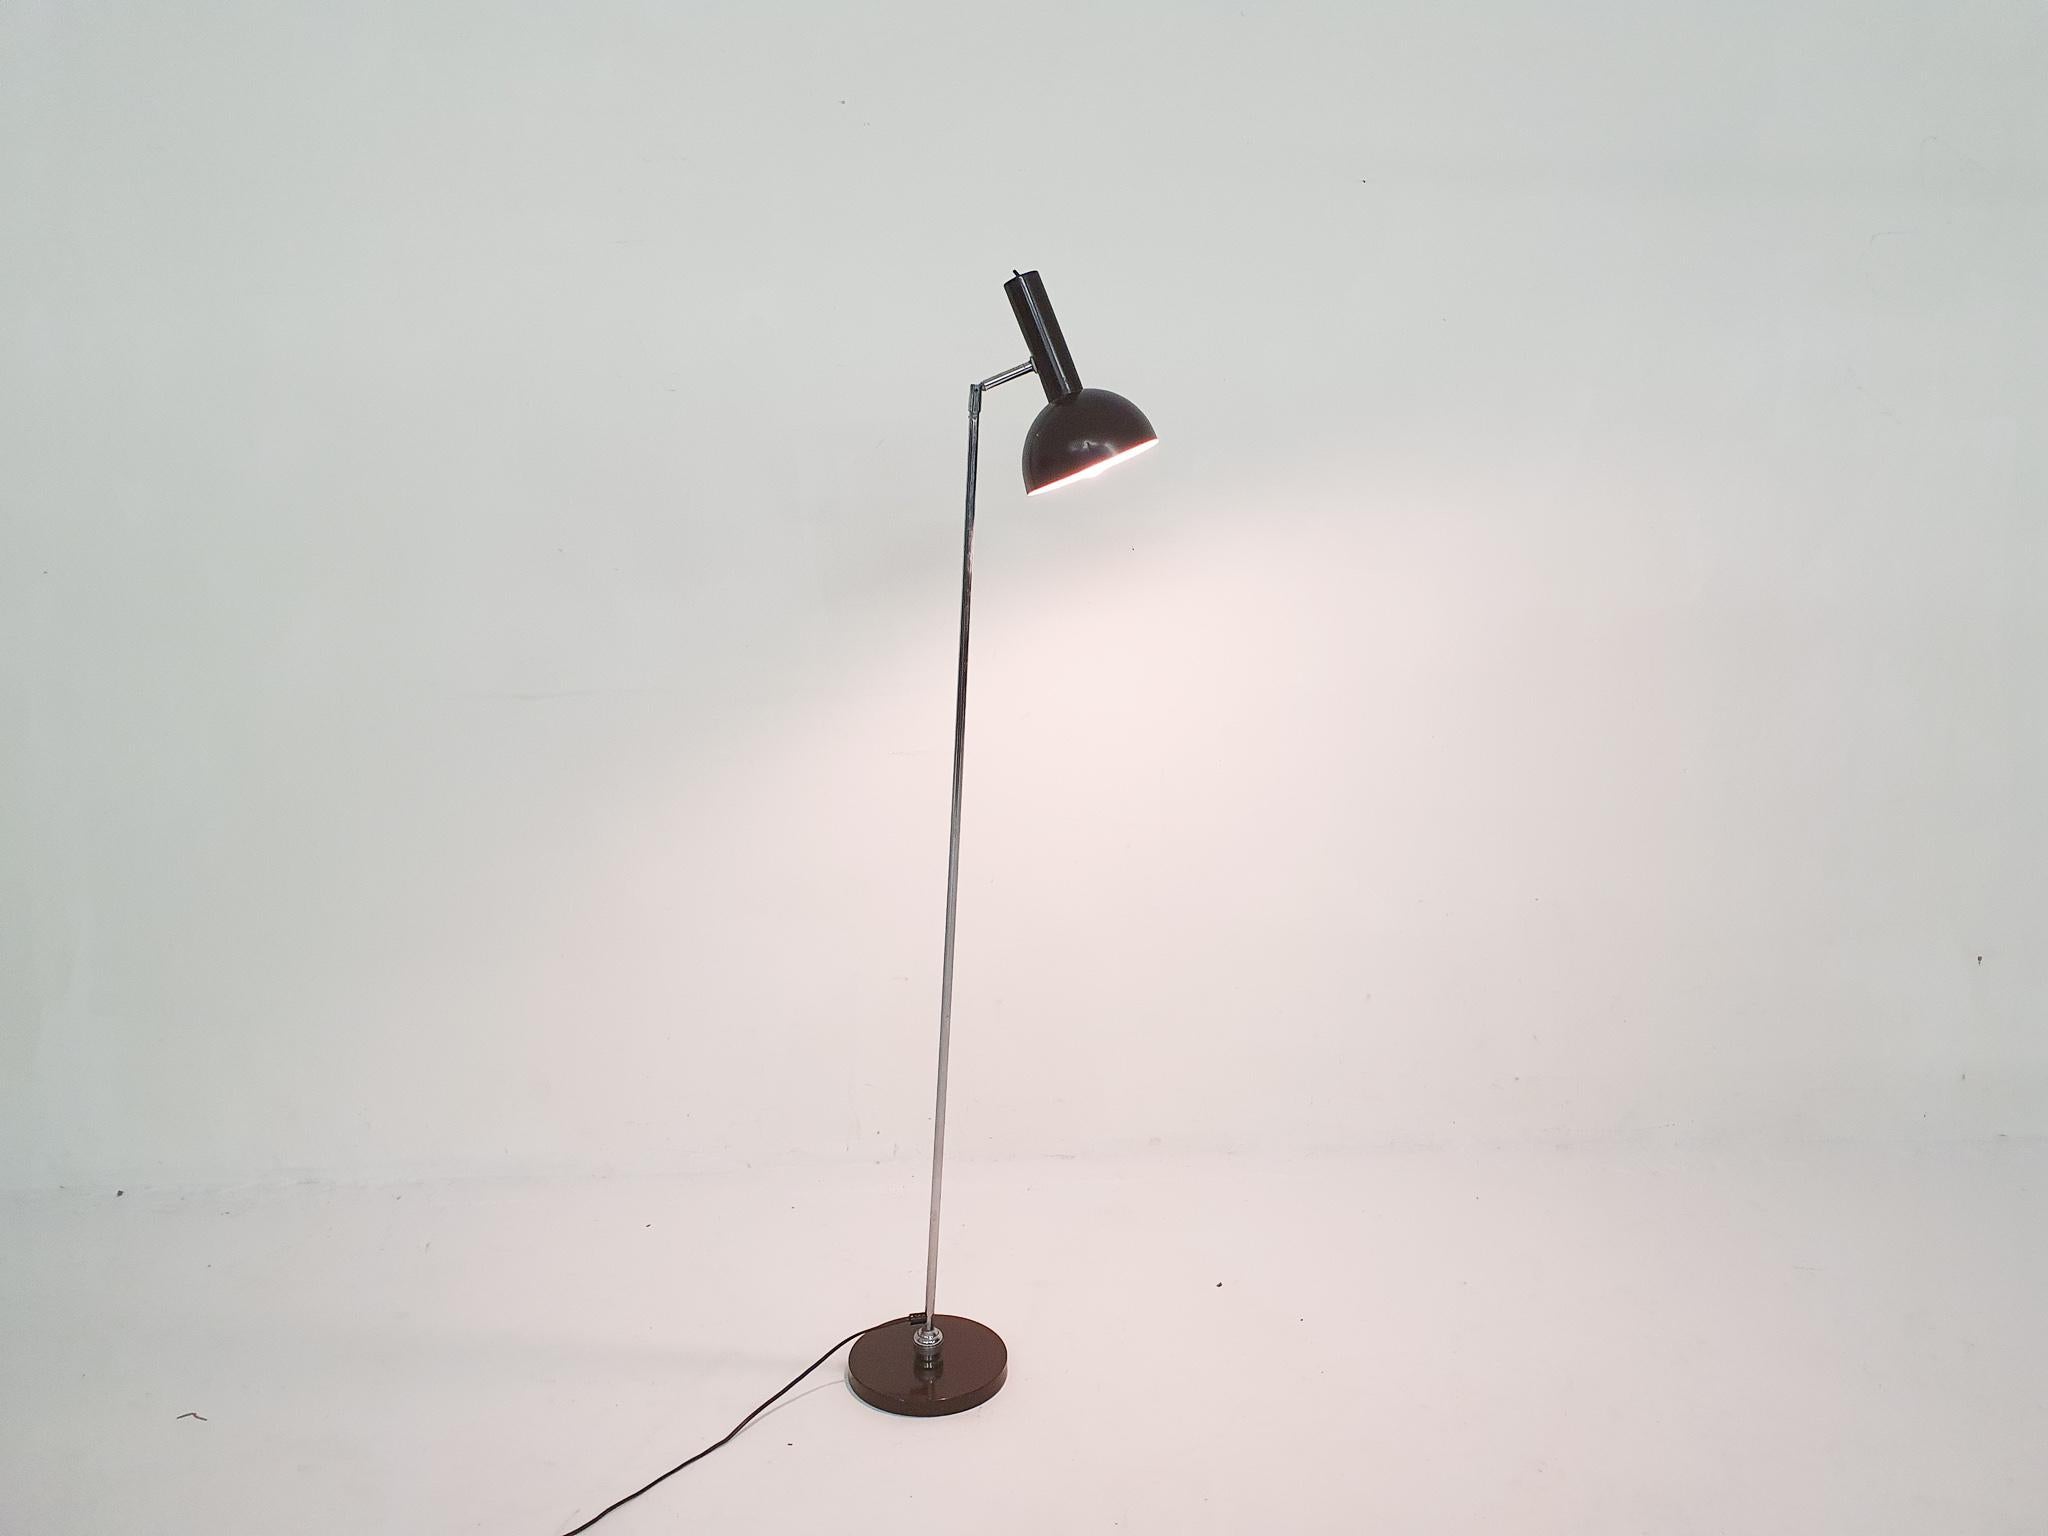 Lampadaire en métal brun foncé. La lampe peut être ajustée et tourner à 360 degrés sur une boule.
Une petite bosse dans l'abat-jour de la lampe.
Herman Theodoor Jan Anthoin Busquet (1914-1977) était un designer industriel néerlandais. Il a